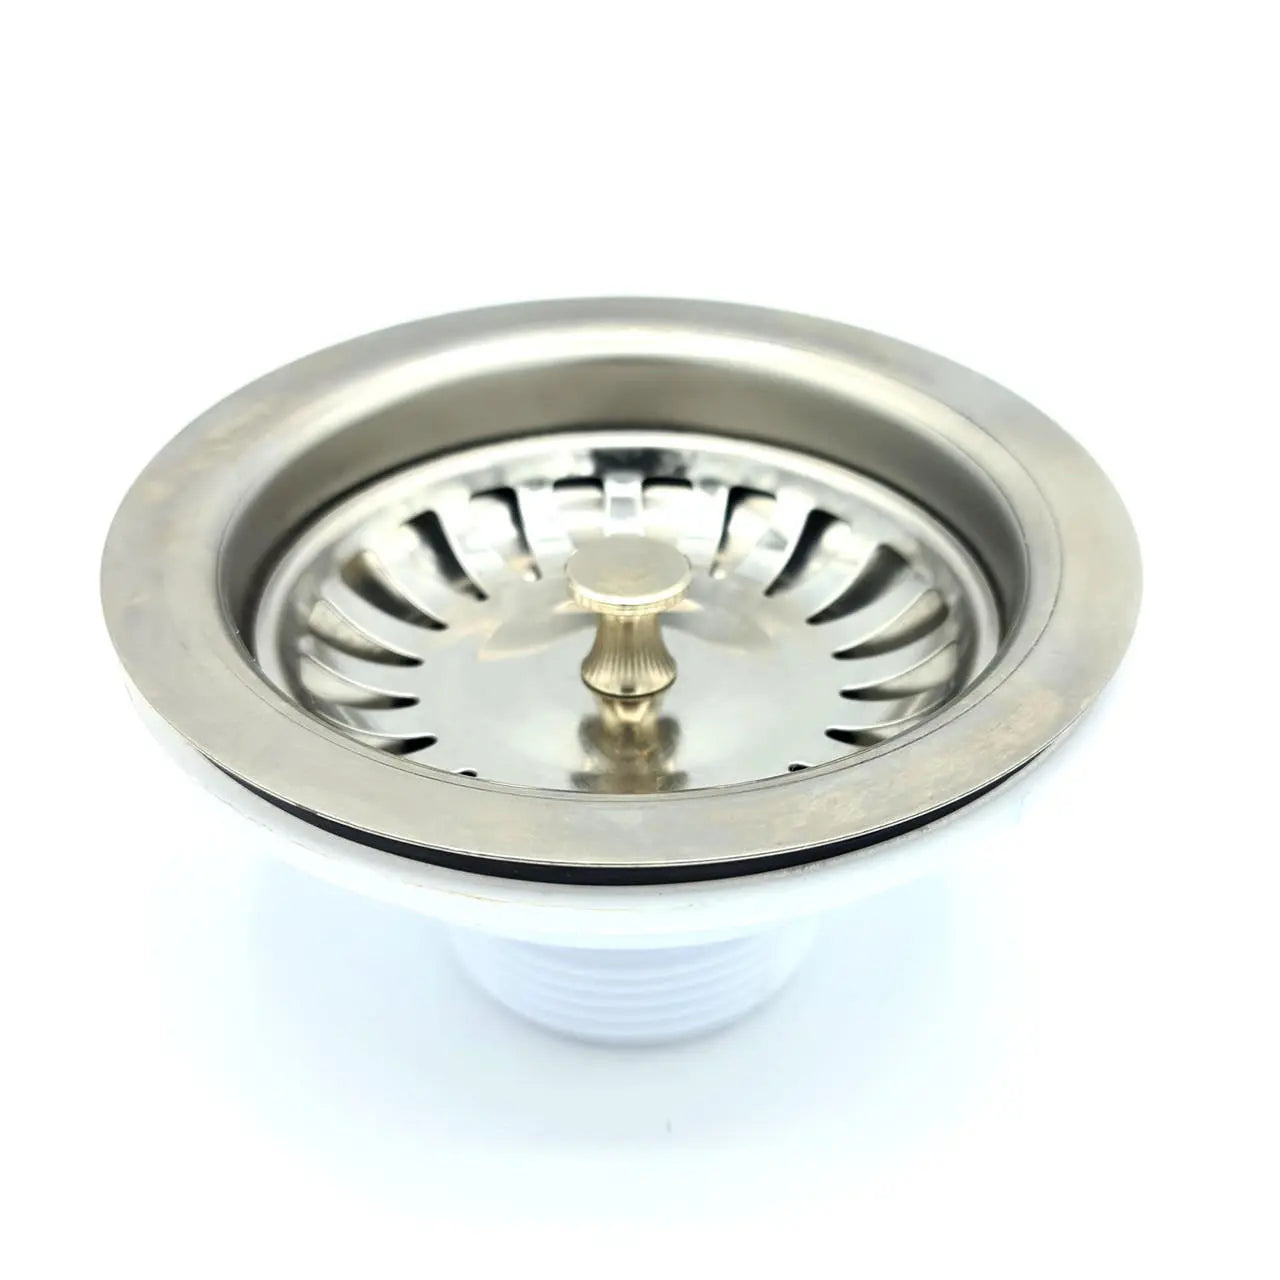 115mm Stainless Steel Strainer Basket for Kitchen Sink Drain - Kitchen Sink Plugs